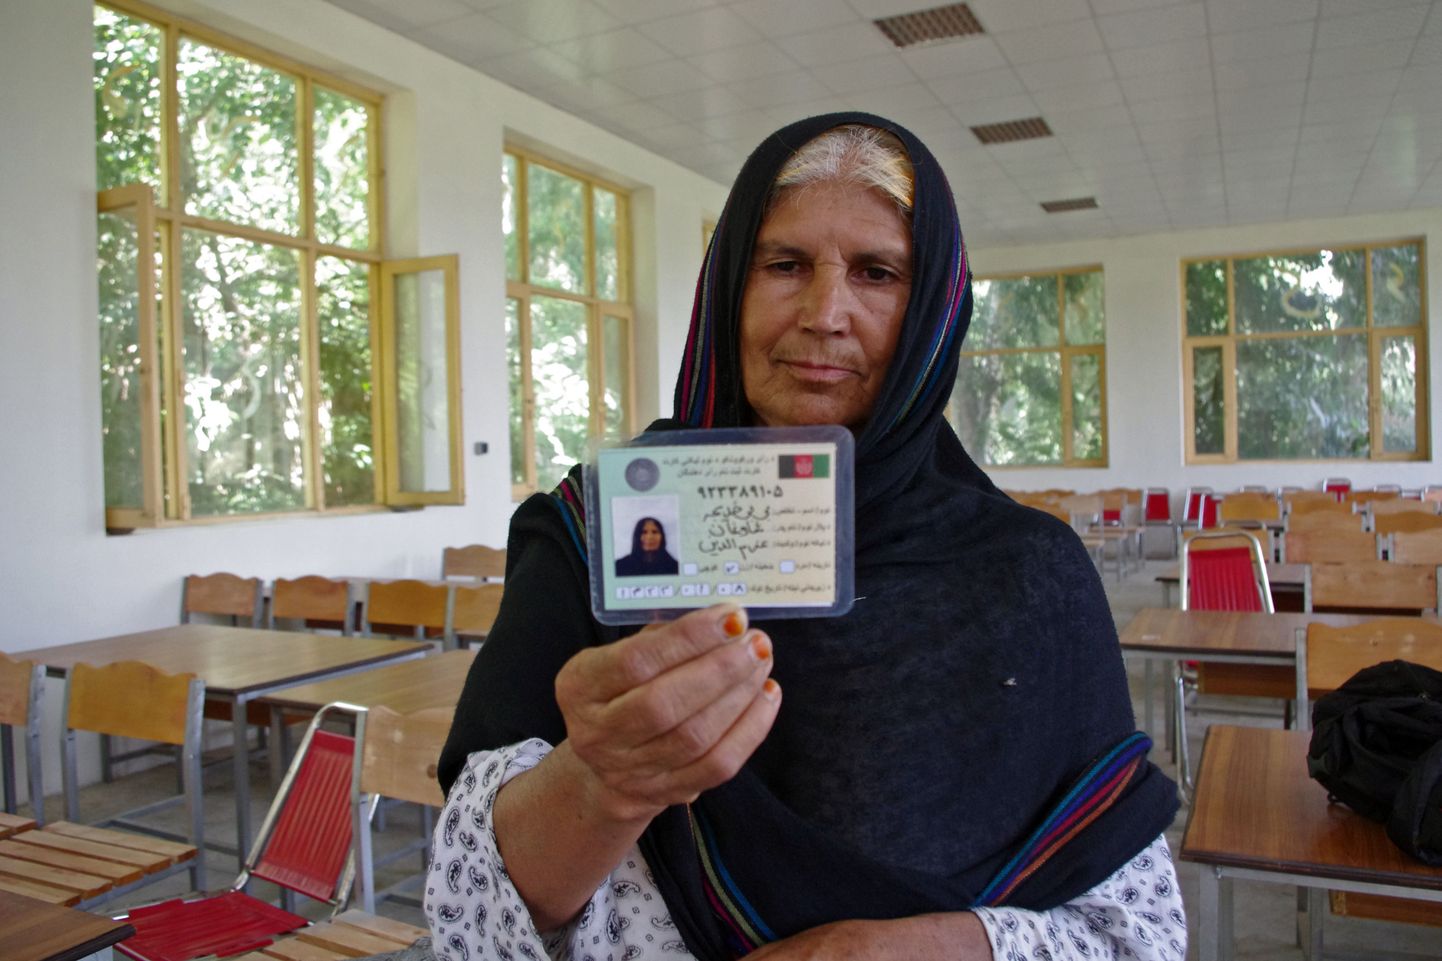 Eakas Afganistani naine näitab valijakaarti Laghmani provintsis Qarghai rajoonis asuvas valijate registreerimise keskuses.